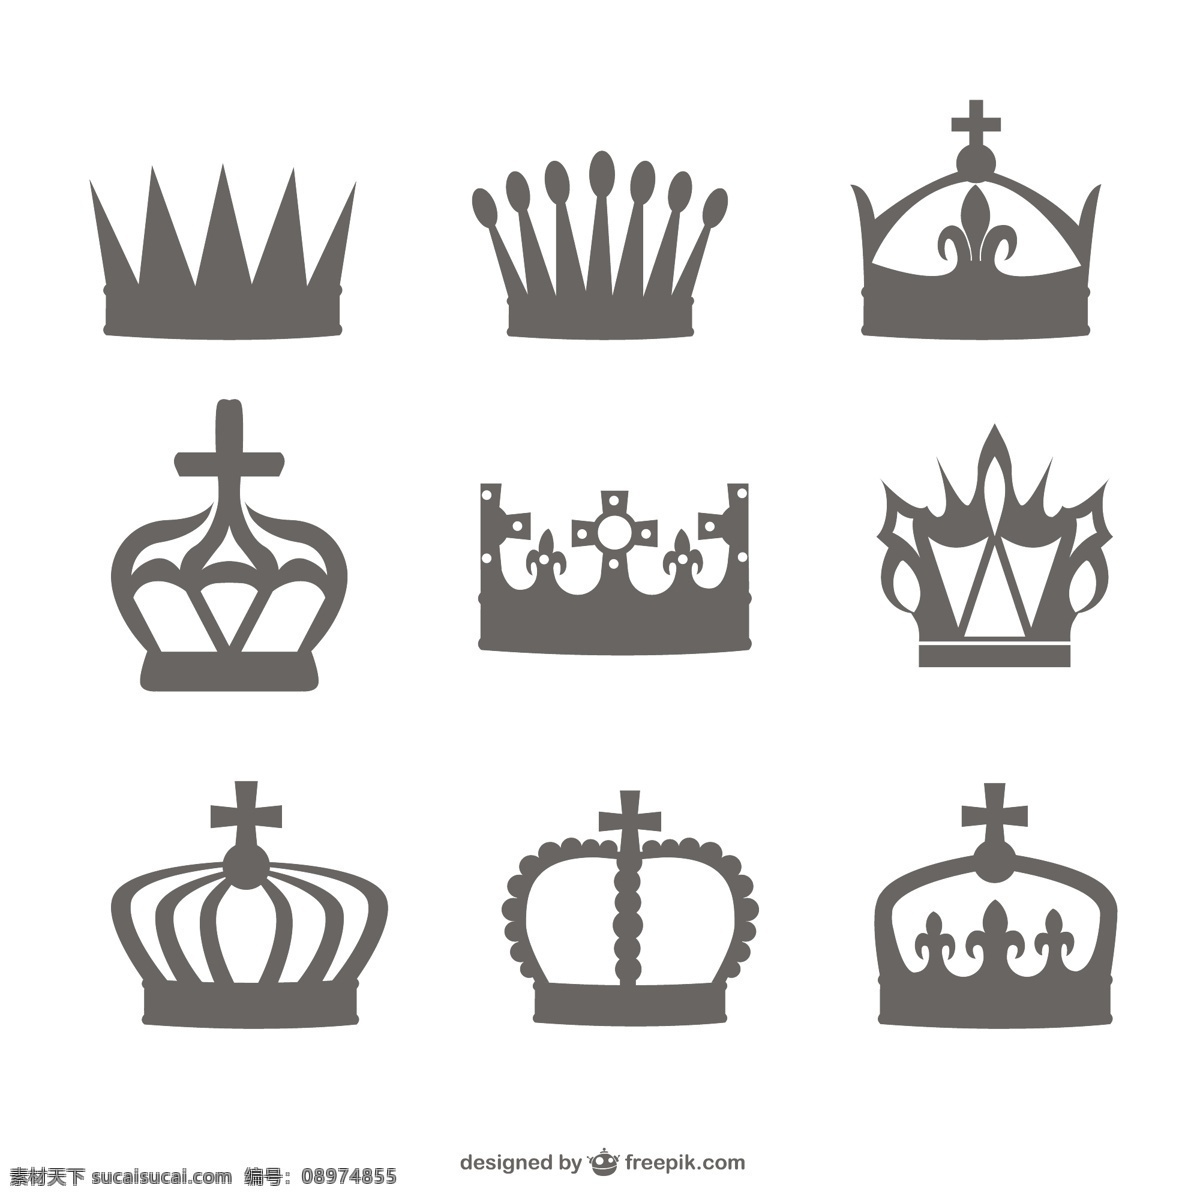 皇冠 黑色 轮廓 集 图标 徽章 按钮 模板 图形 布局 公主 优雅 平面设计 皇家 国王 元素 象形文字 设计元素 白色